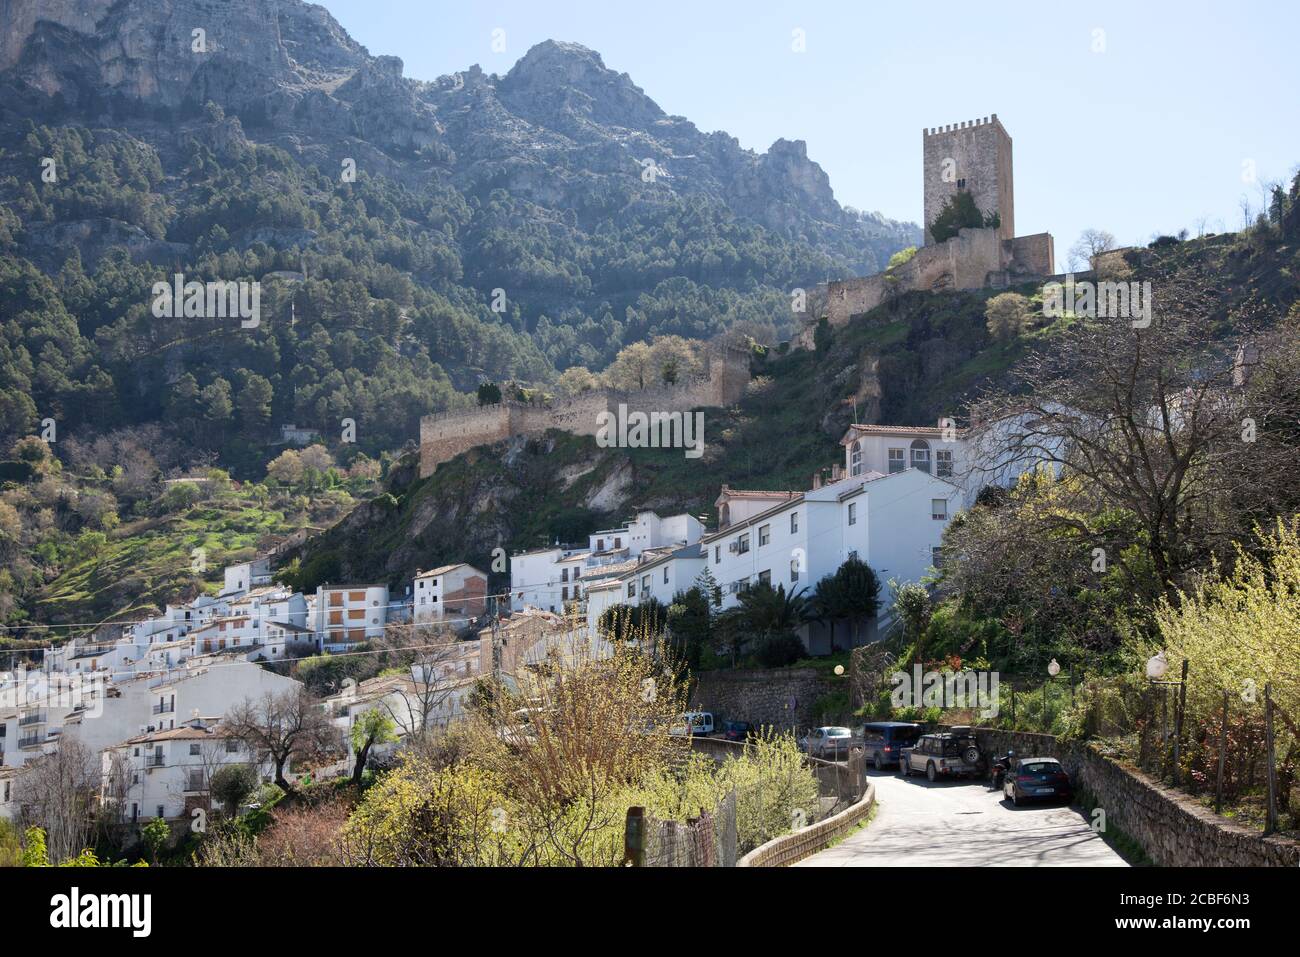 Le Castillo de la Yedra surplombe la ville de Cazorla, en Espagne, avec ses maisons blanchies à la chaux et sa toile de fond montagneuse. Banque D'Images